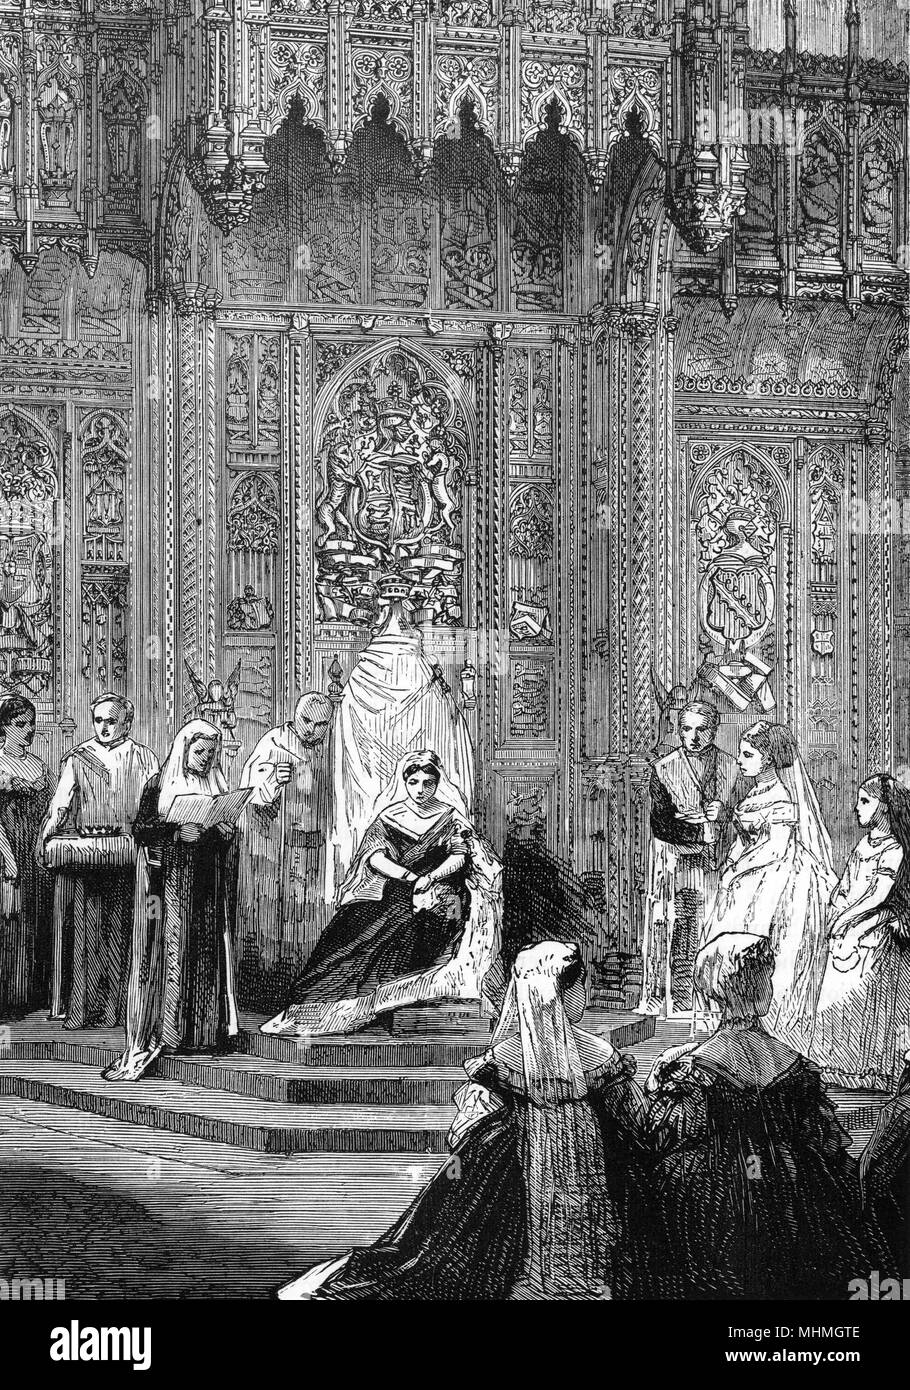 La reina Victoria asiste a la ceremonia de apertura del Parlamento. El discurso de la reina es leer a los allí reunidos los señores y miembros. Fecha: 1871 Foto de stock